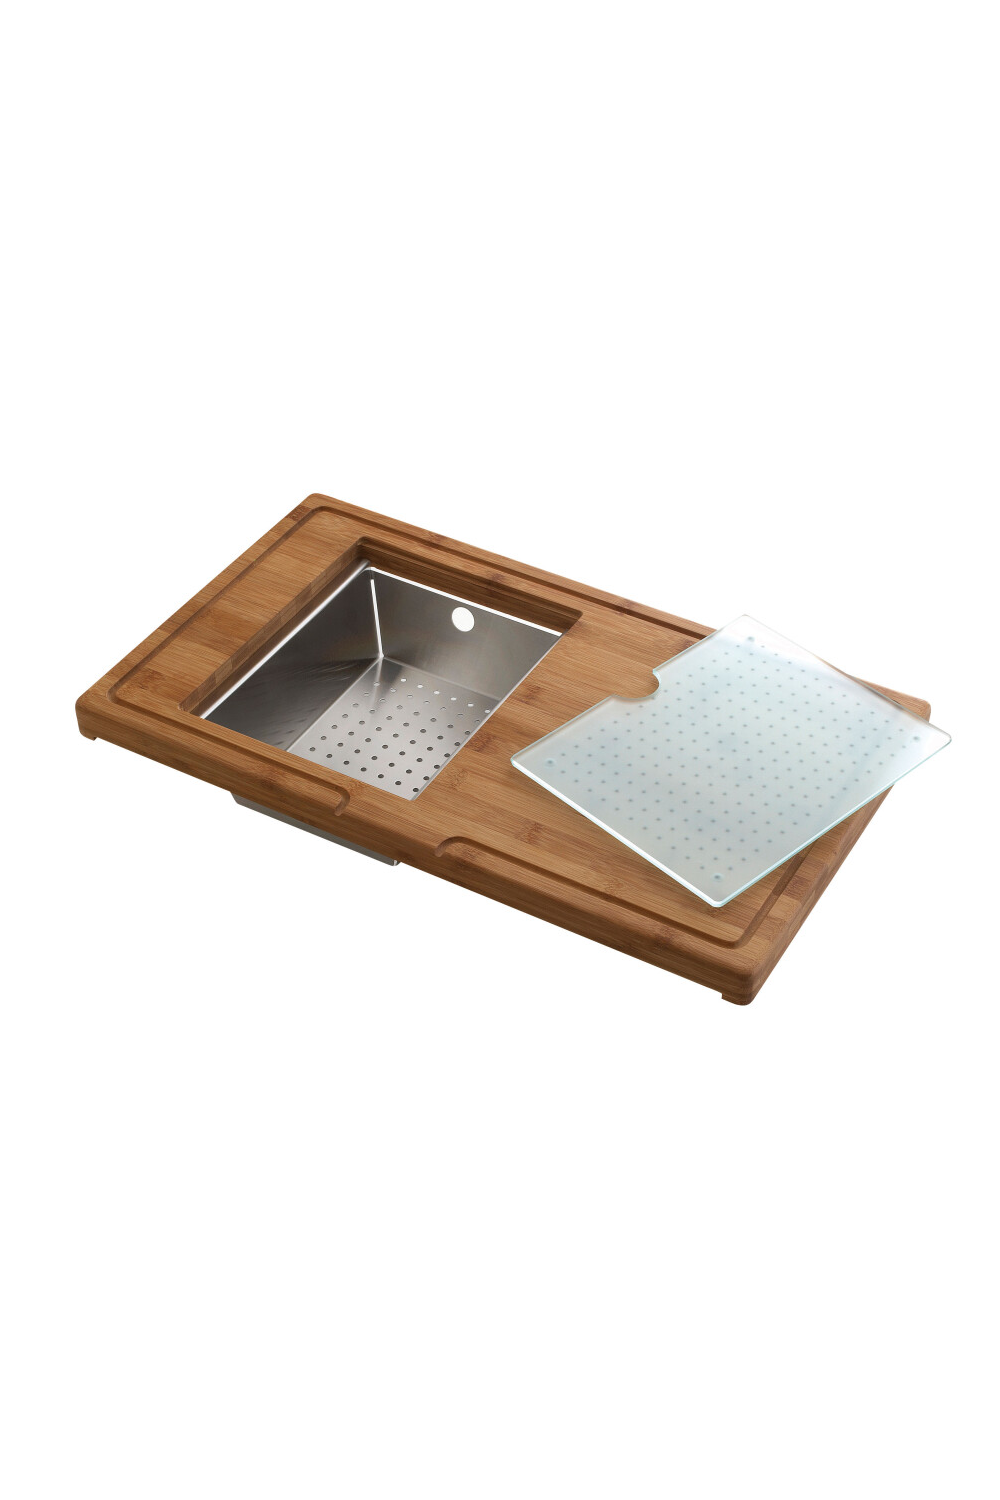 LUISINA Bamboo Chopping Board, Integrated Drain Basket & Glass Chopping Board | Made in France |